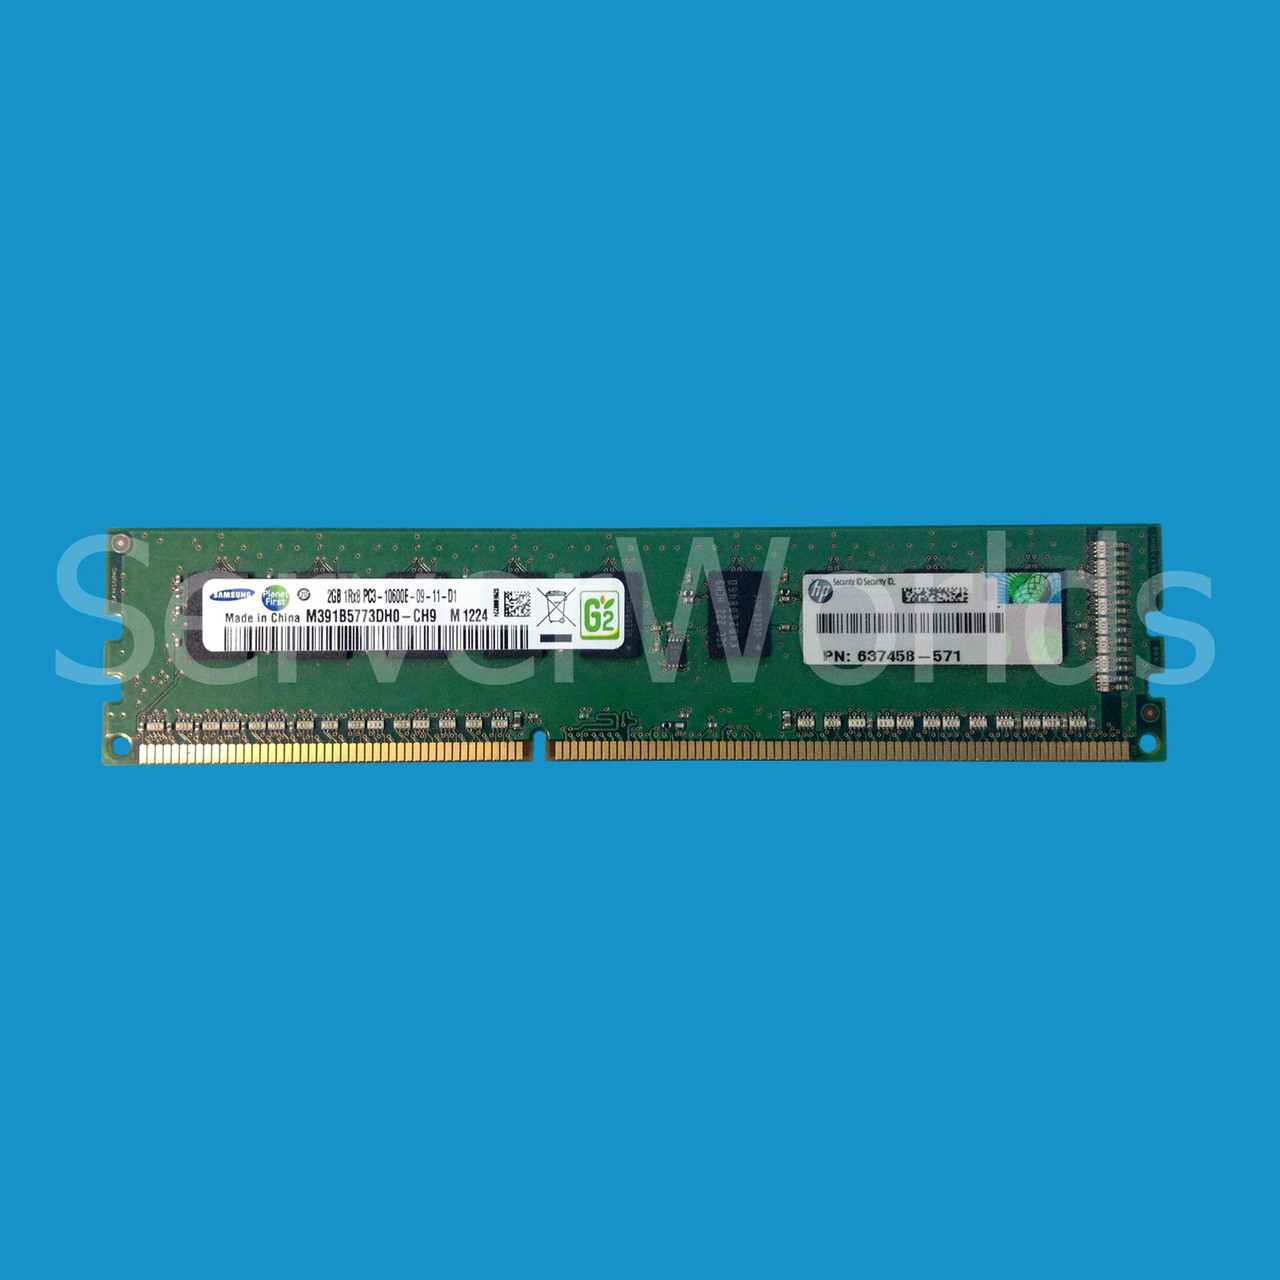 HP 637458-571 2GB PC3-10600e DDR3 Memory 637593-001, 661621-001